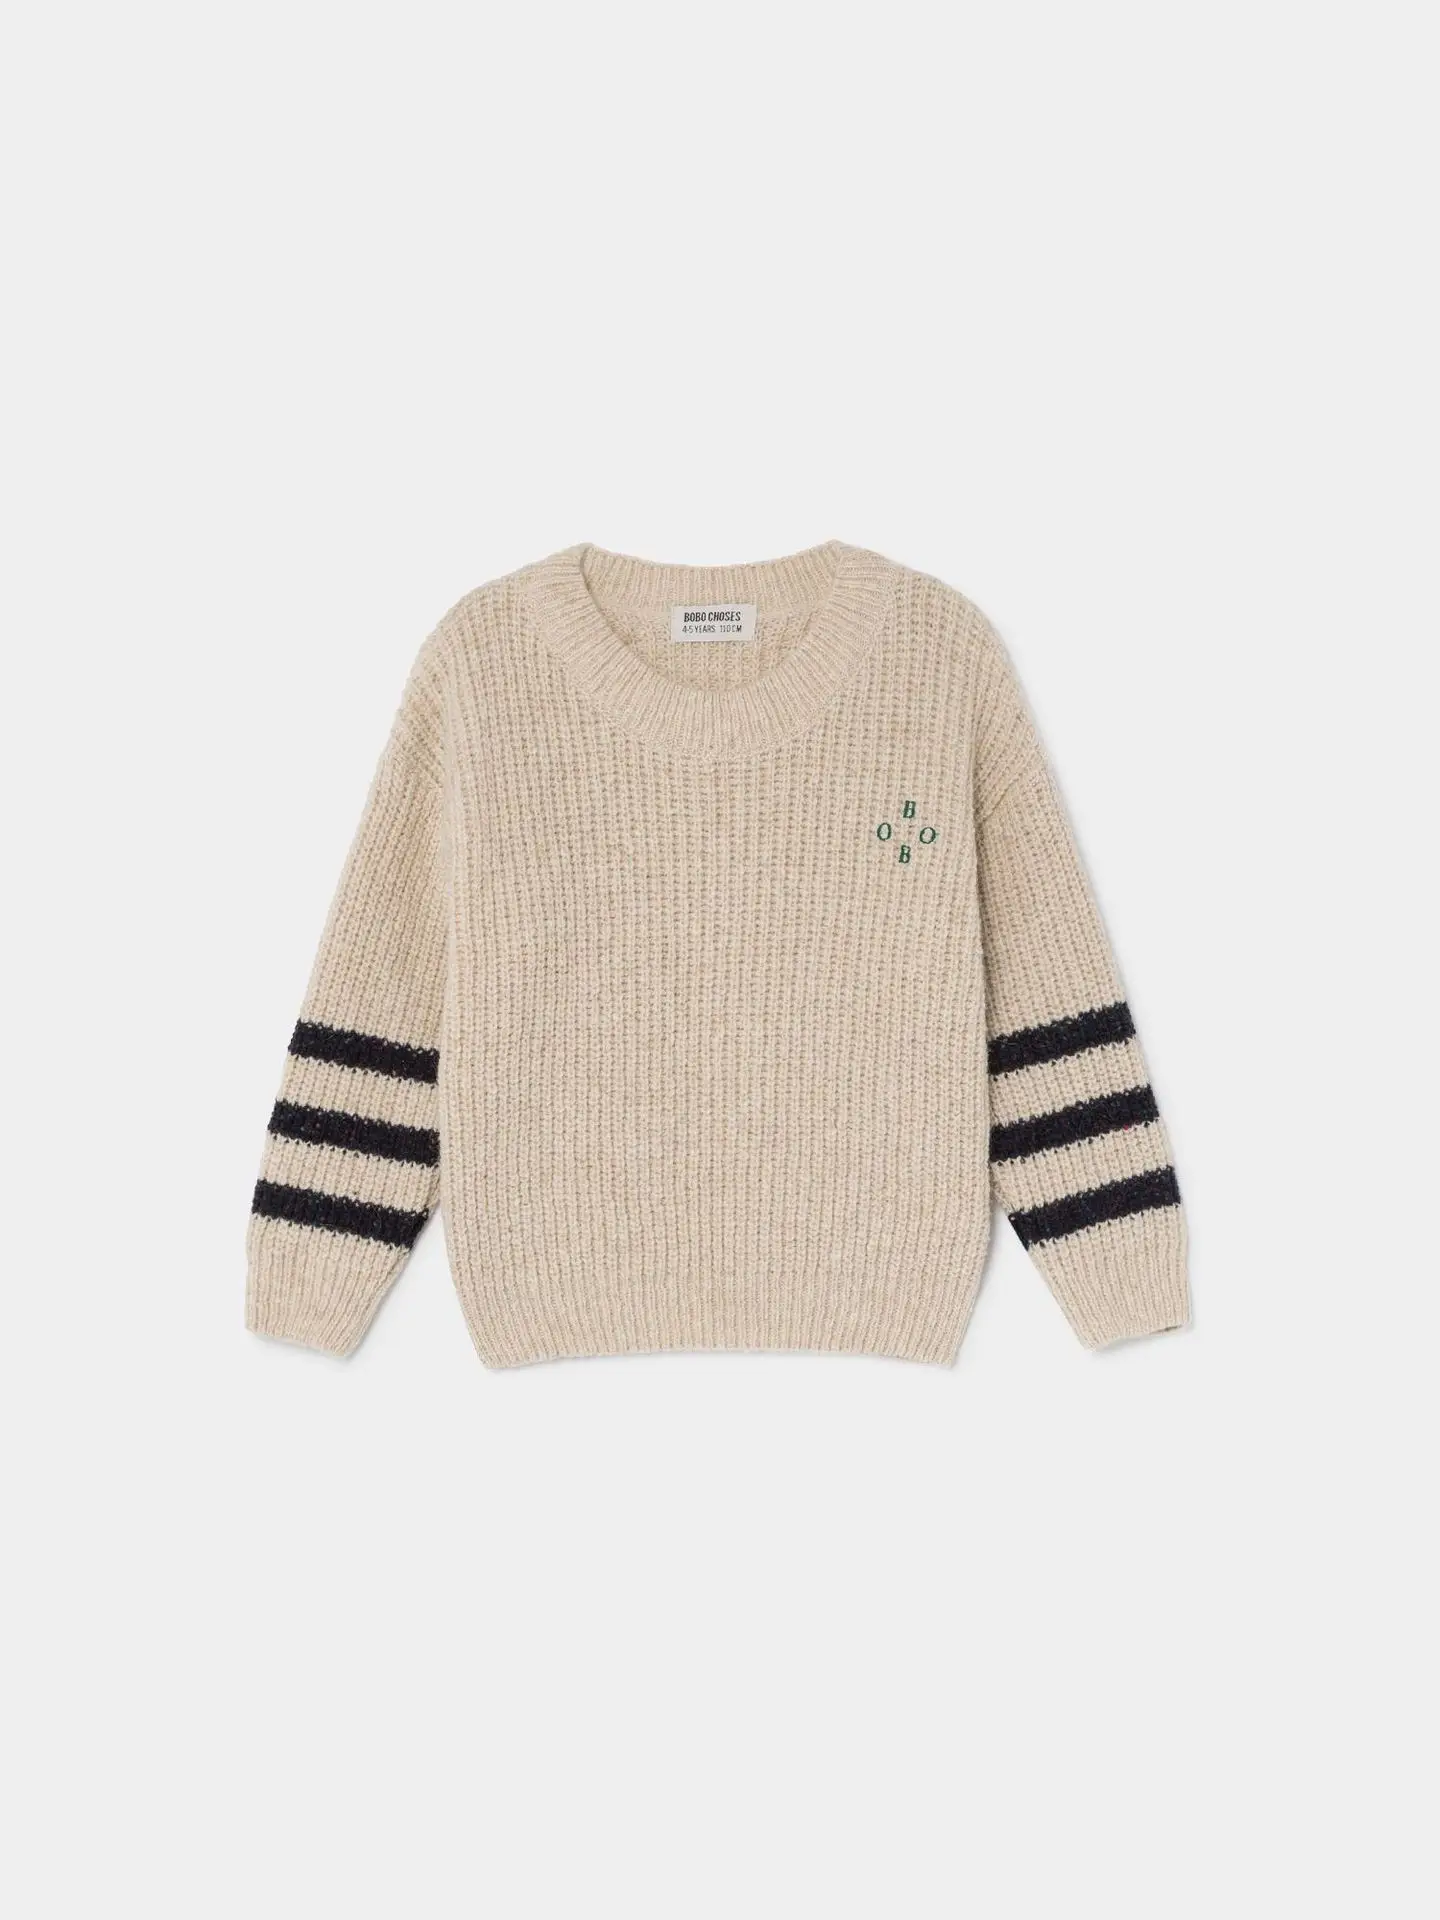 Зимняя одежда для девочек свитер для мальчиков Детский свитер пуловер свитер Рождественская одежда для малышей Топ свитер брендовый свитер bambu - Цвет: BO